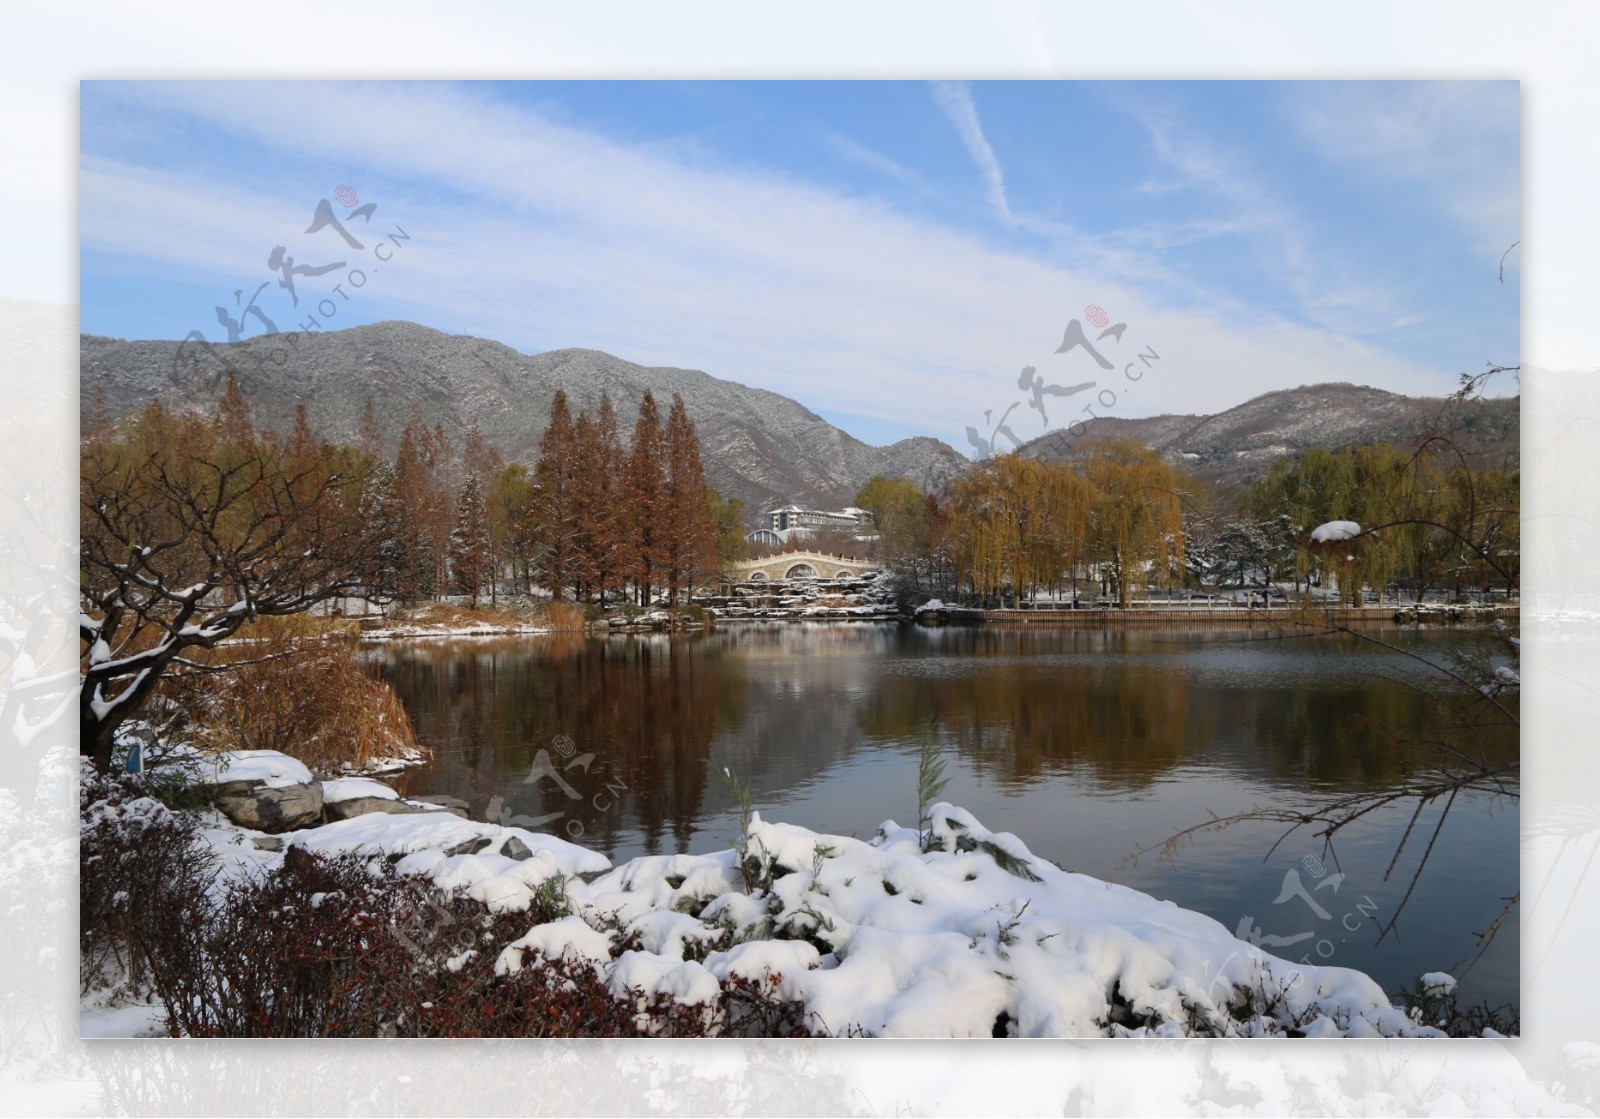 美丽的冬季湖泊风景图片